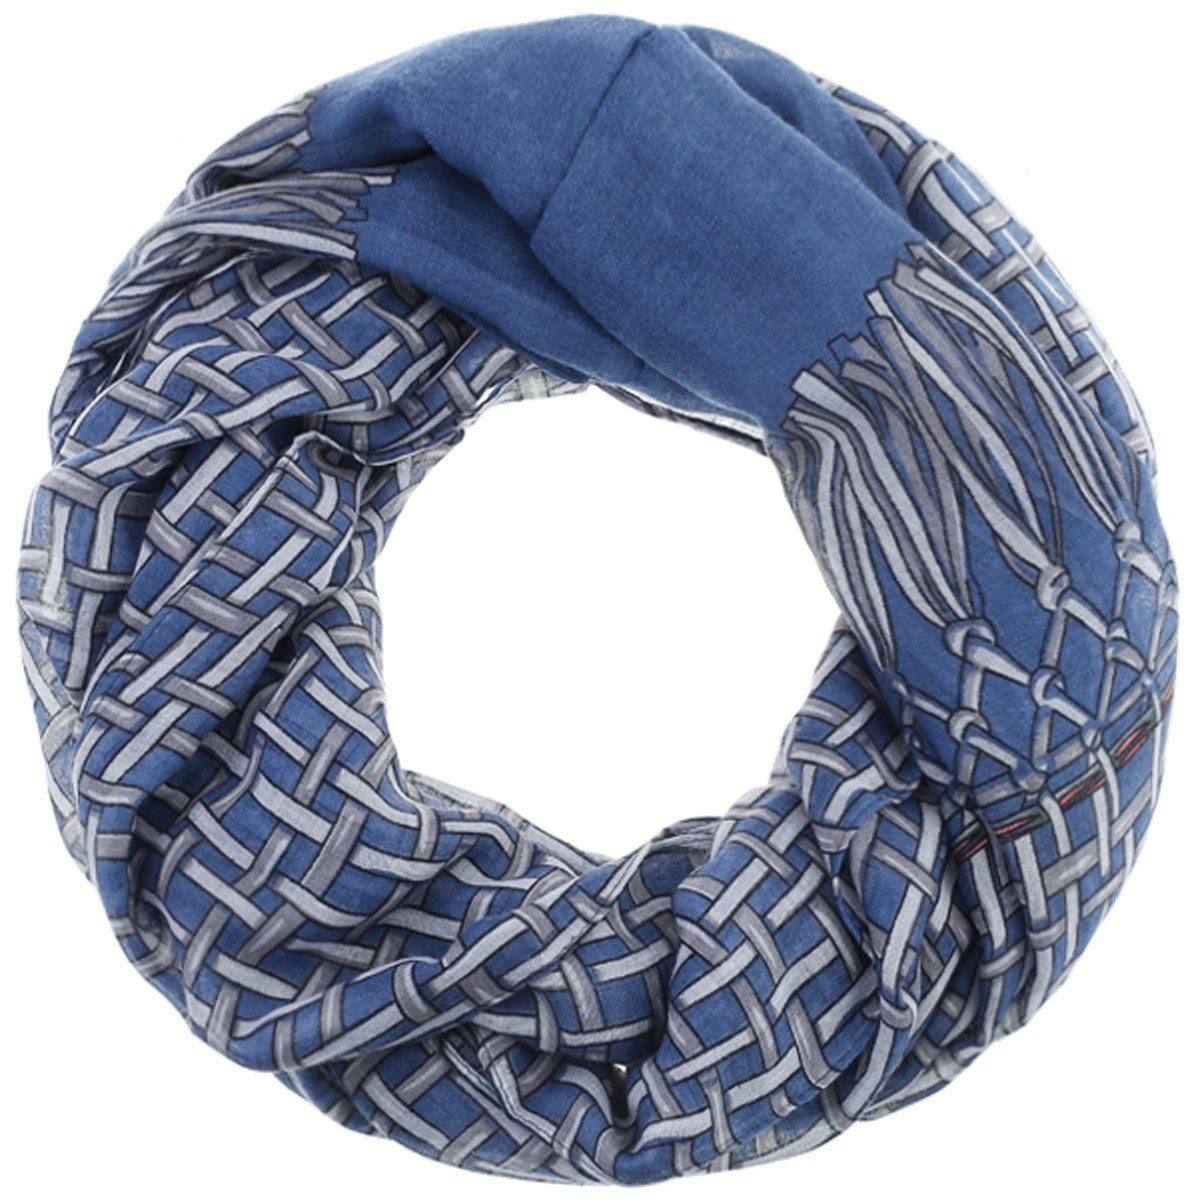 Faera Loop, Damen Schal gemusterter weicher und leichter Loopschal Einheitsgröße verschiedenen Farben blau